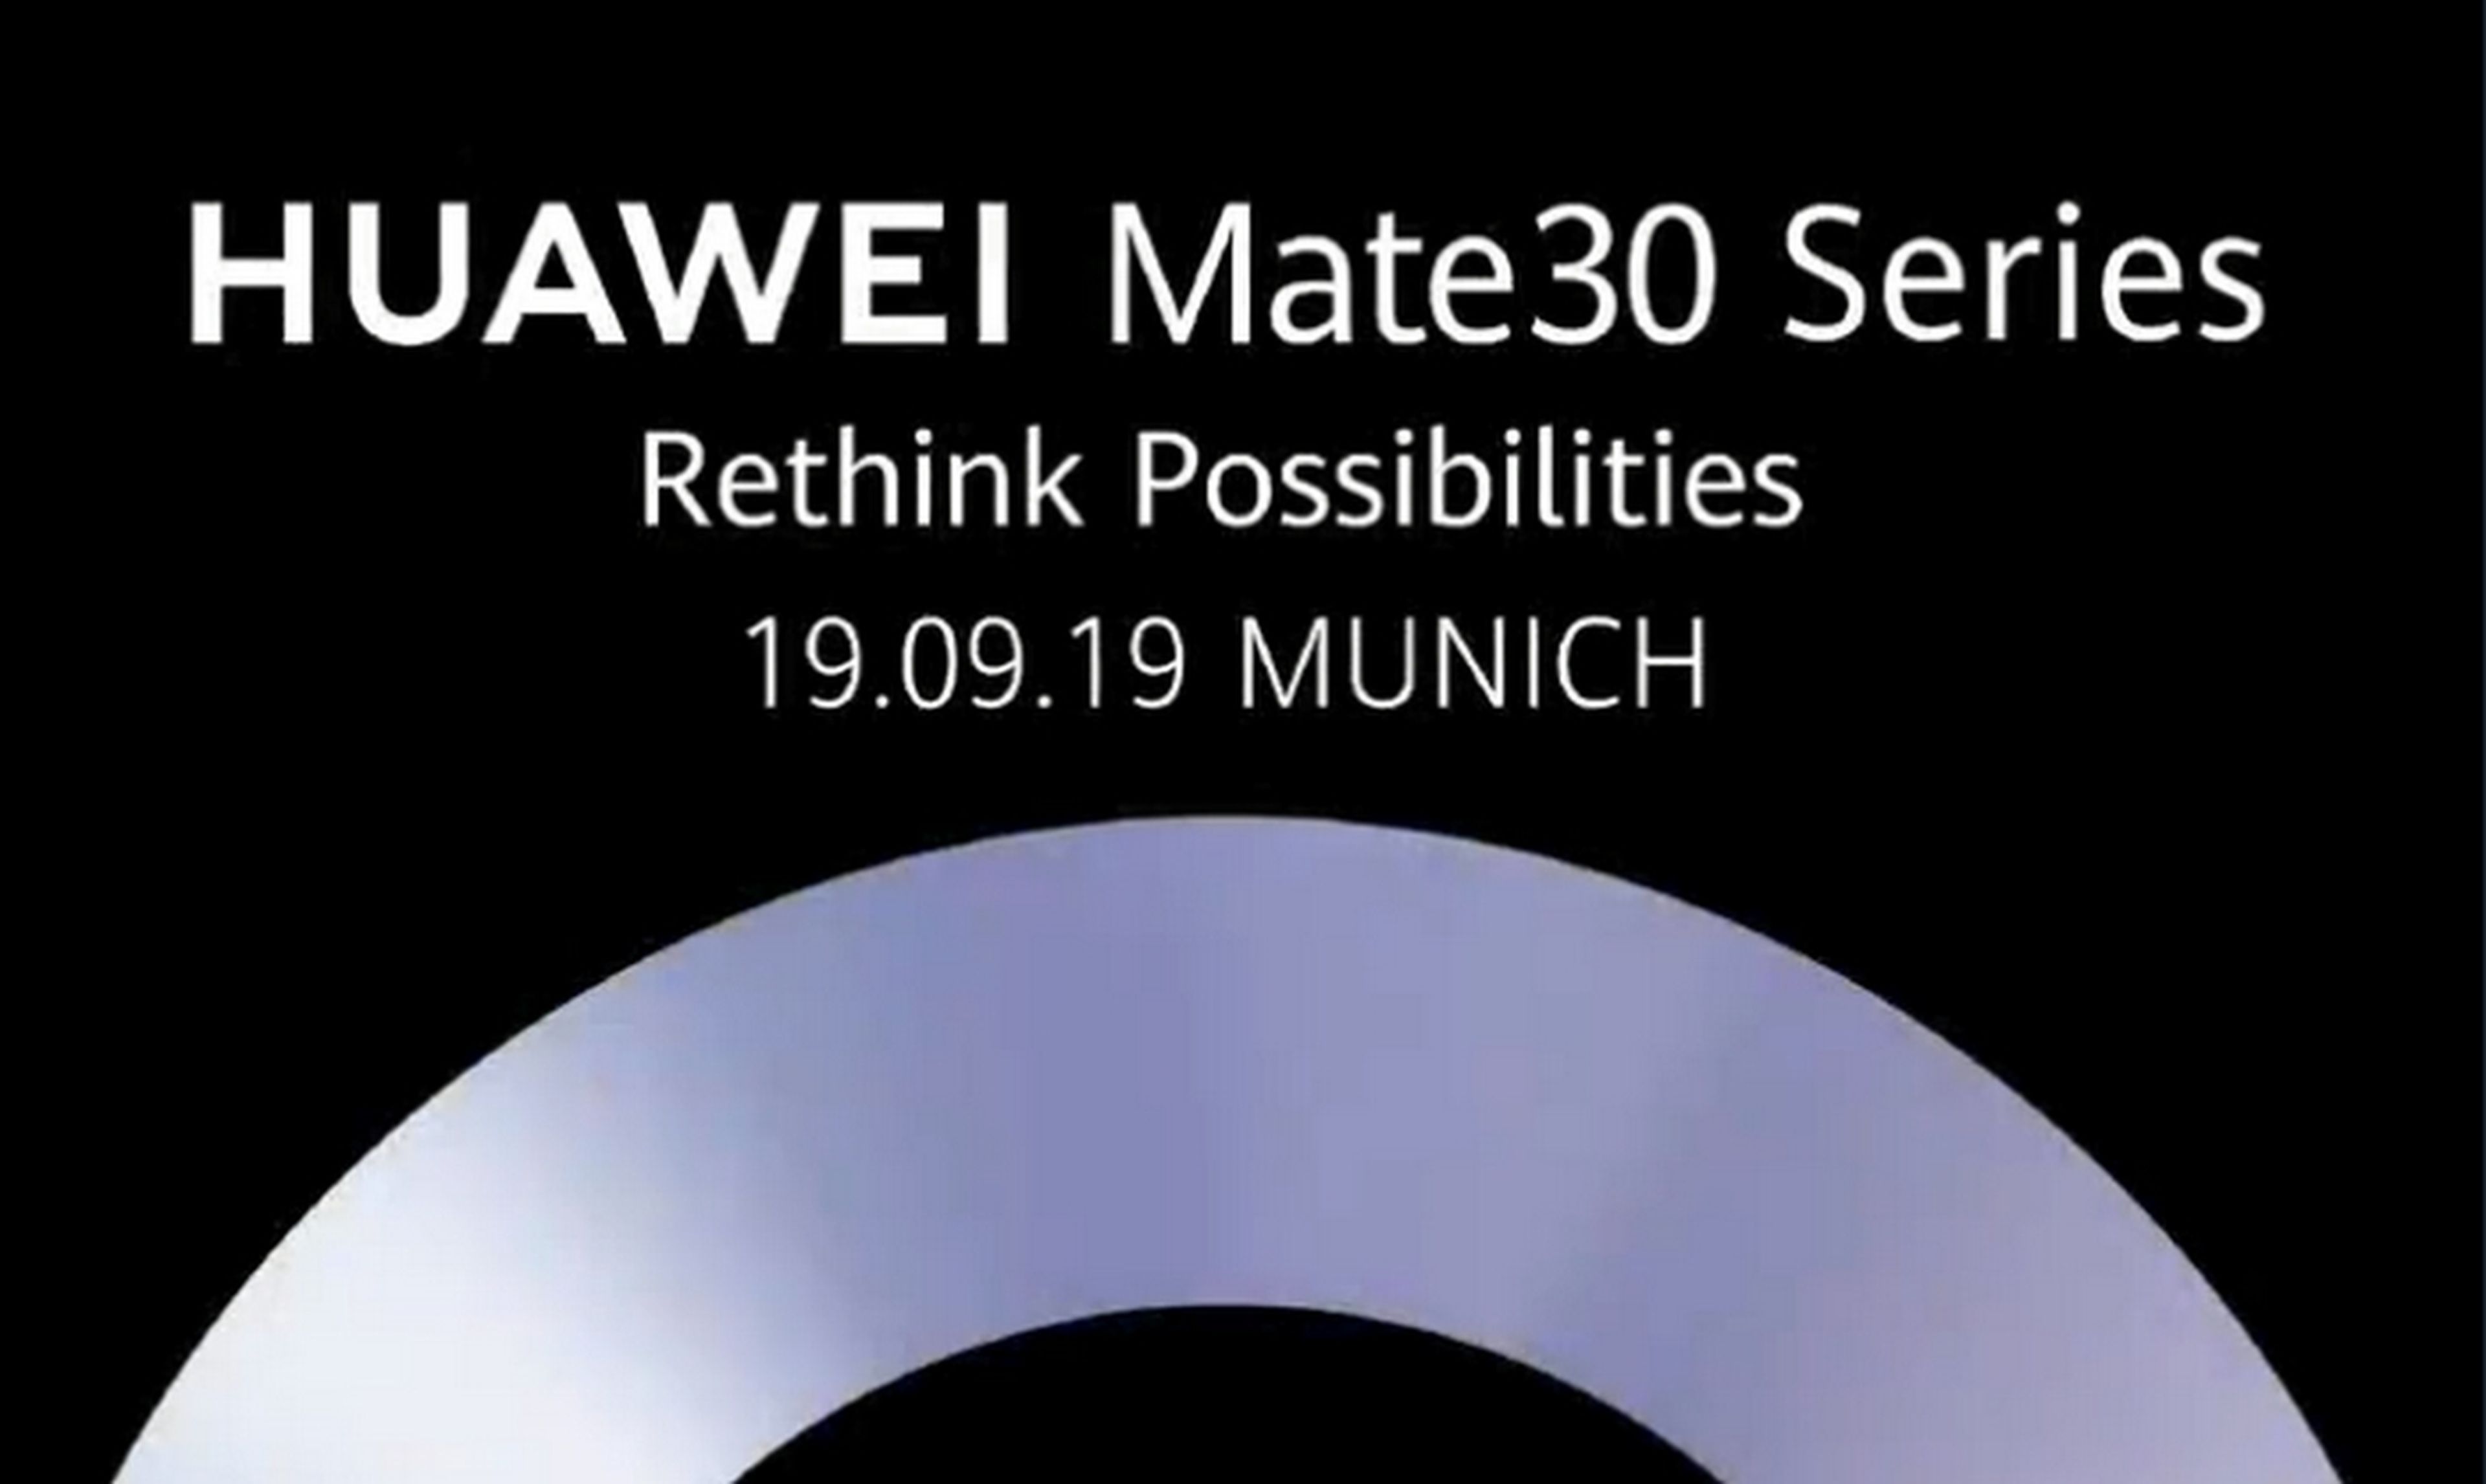 Presentación del Huawei Mate 30